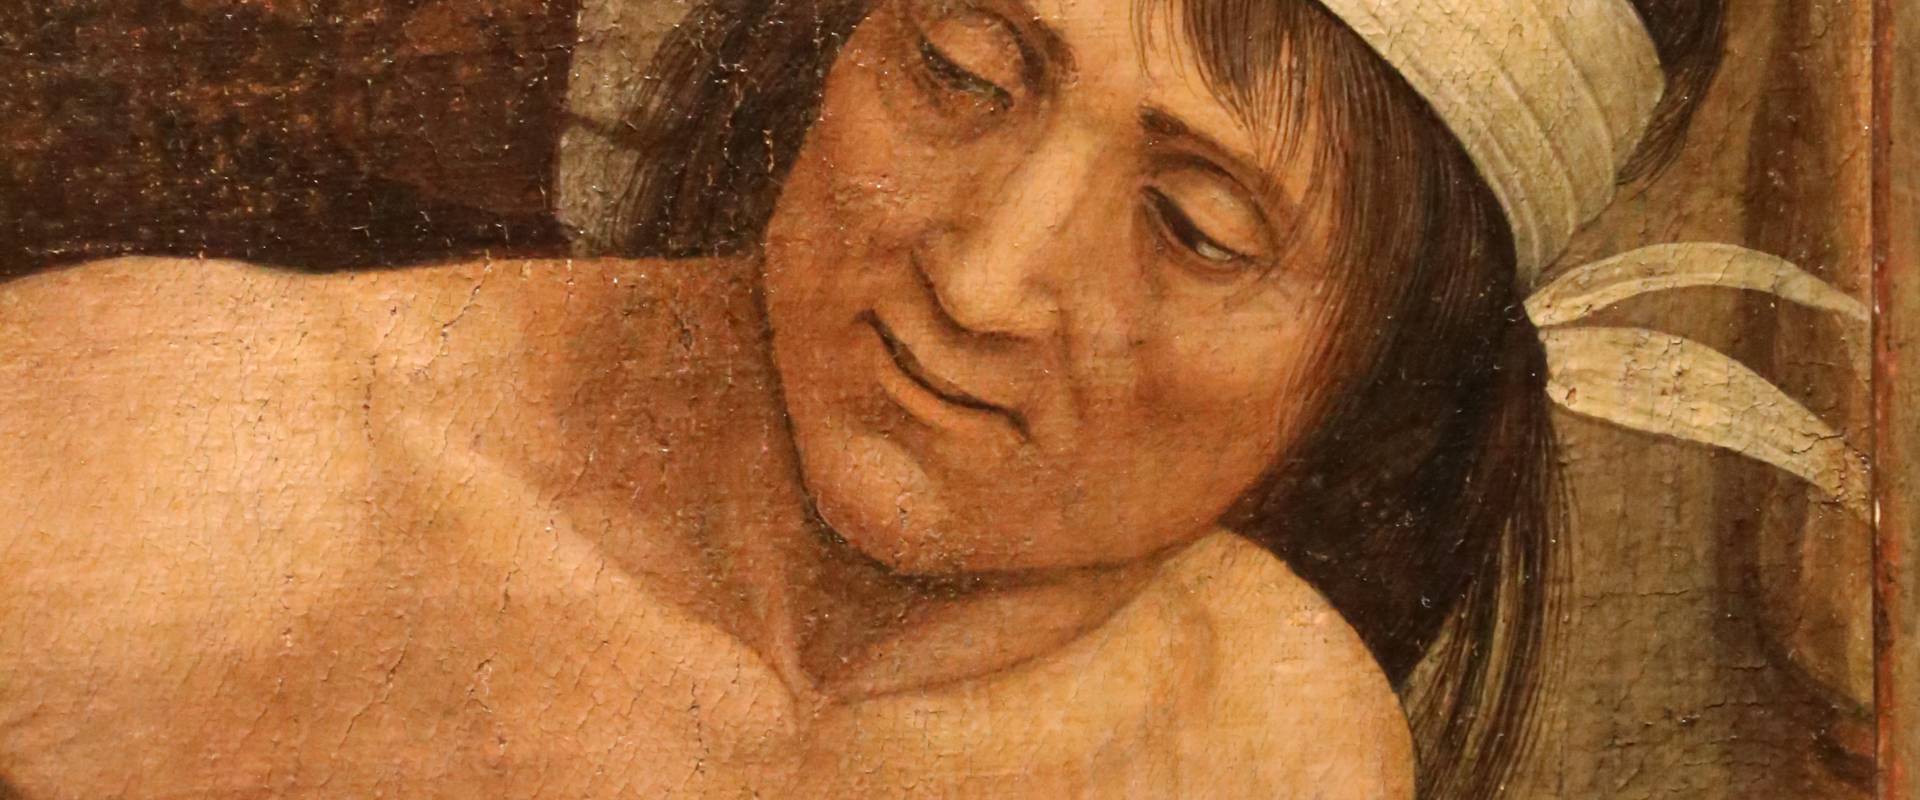 Andrea mantegna, minerva scaccia i vizi dal giardino delle virtù, 1497-1502 ca. (louvre) 39 foto di Sailko